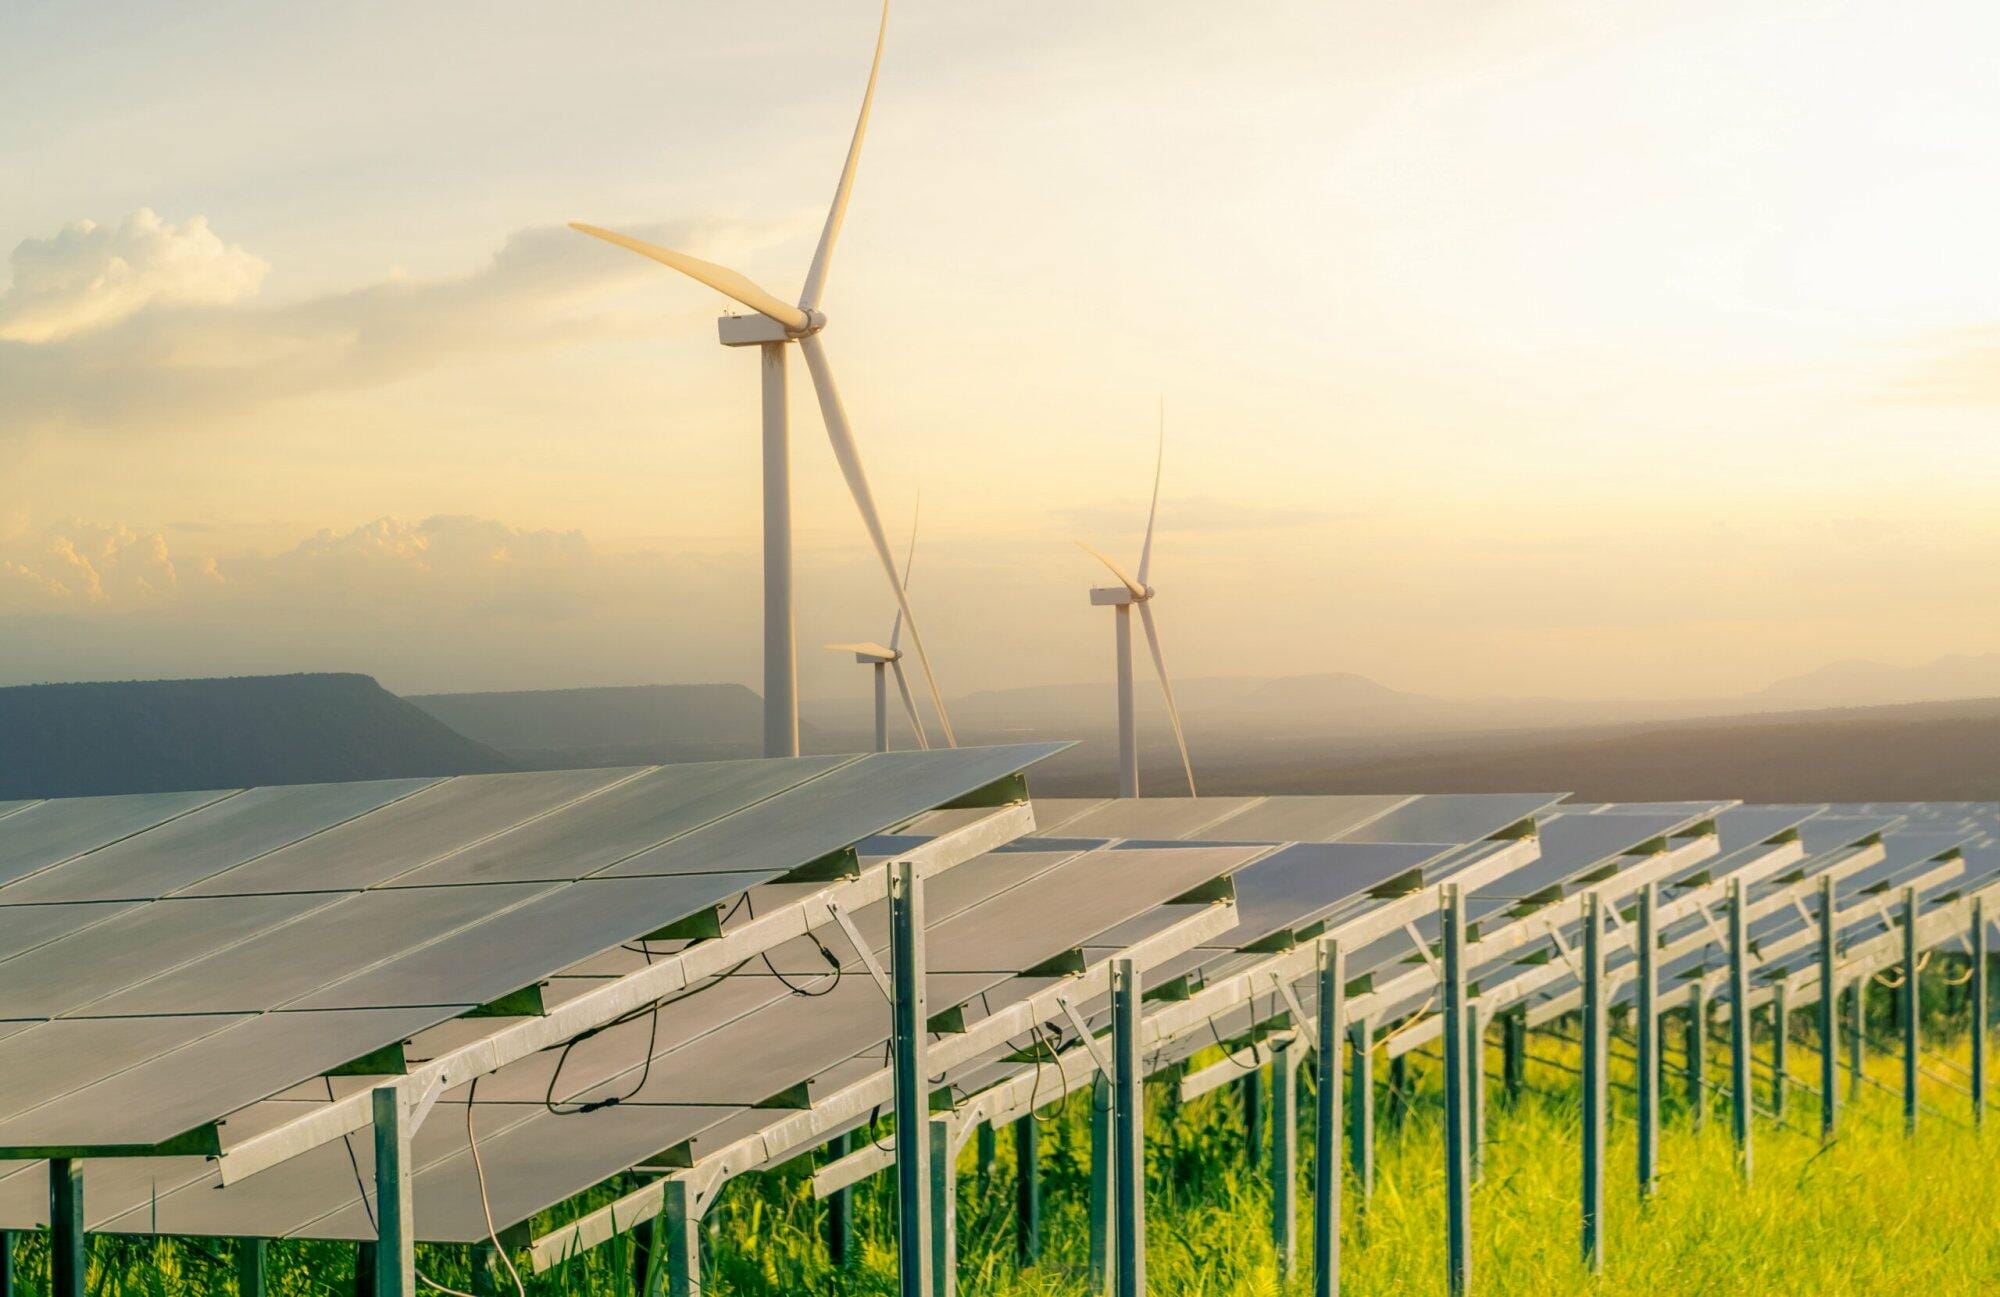 sustainable energy solar and wind turbines farm 2022 10 17 15 31 35 utc